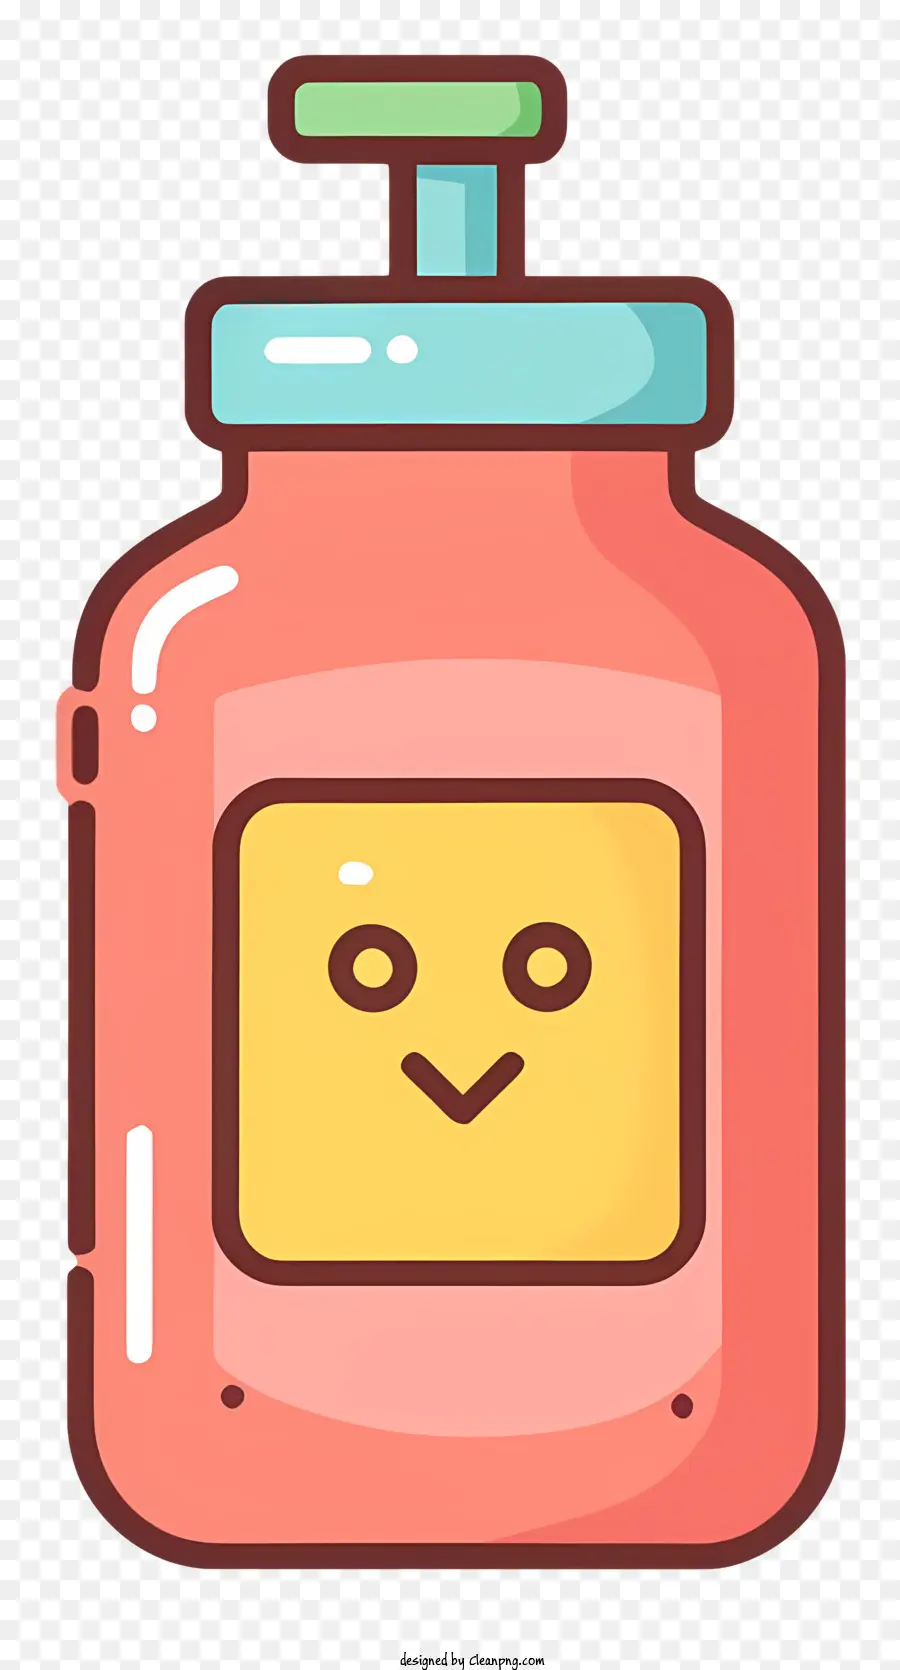 cartoon jar creamy substance pink smiling face